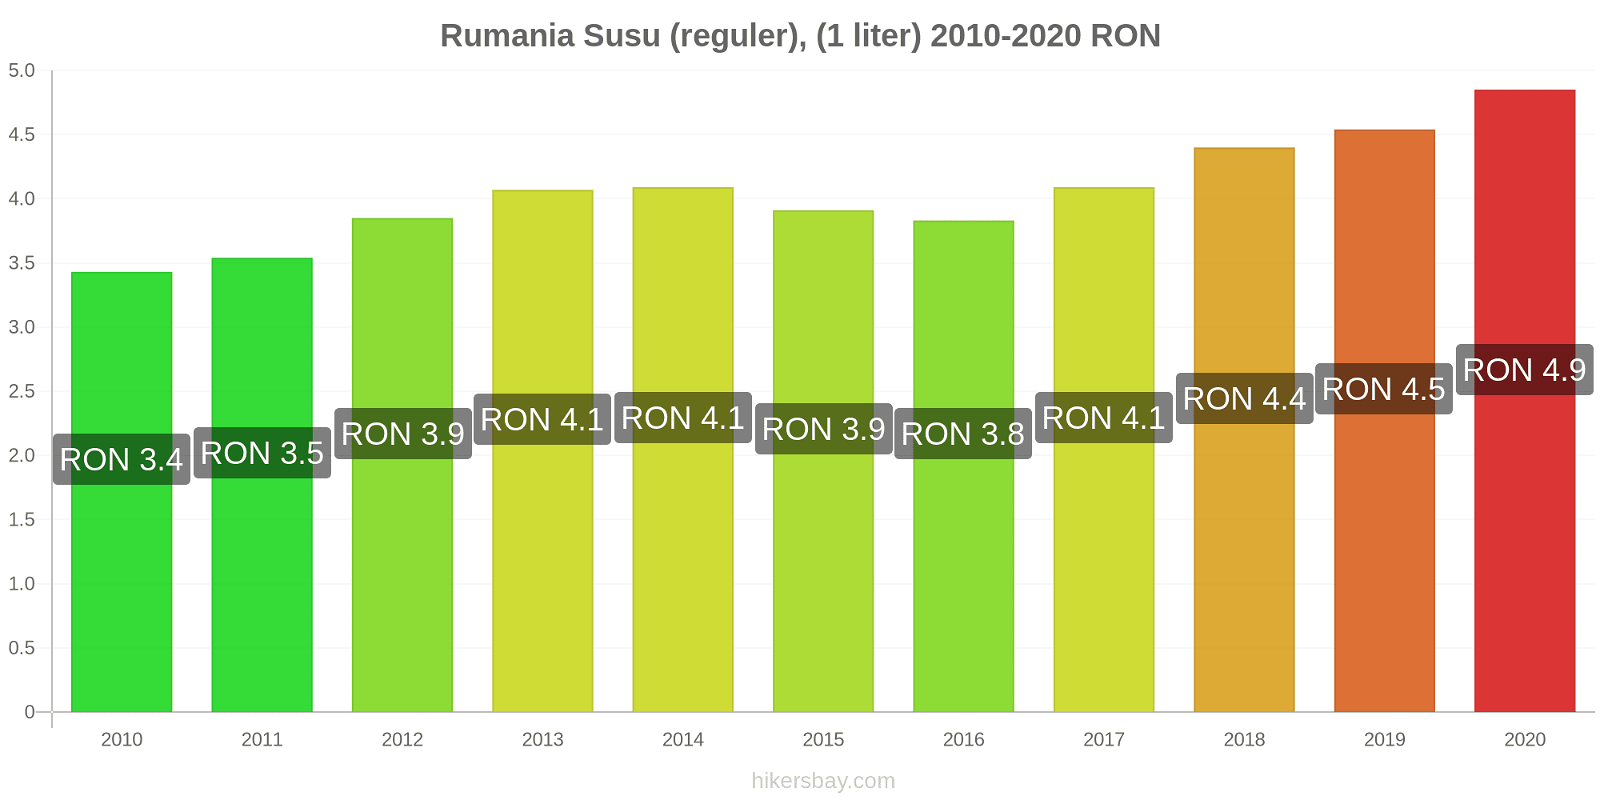 Rumania perubahan harga Susu (reguler), (1 liter) hikersbay.com